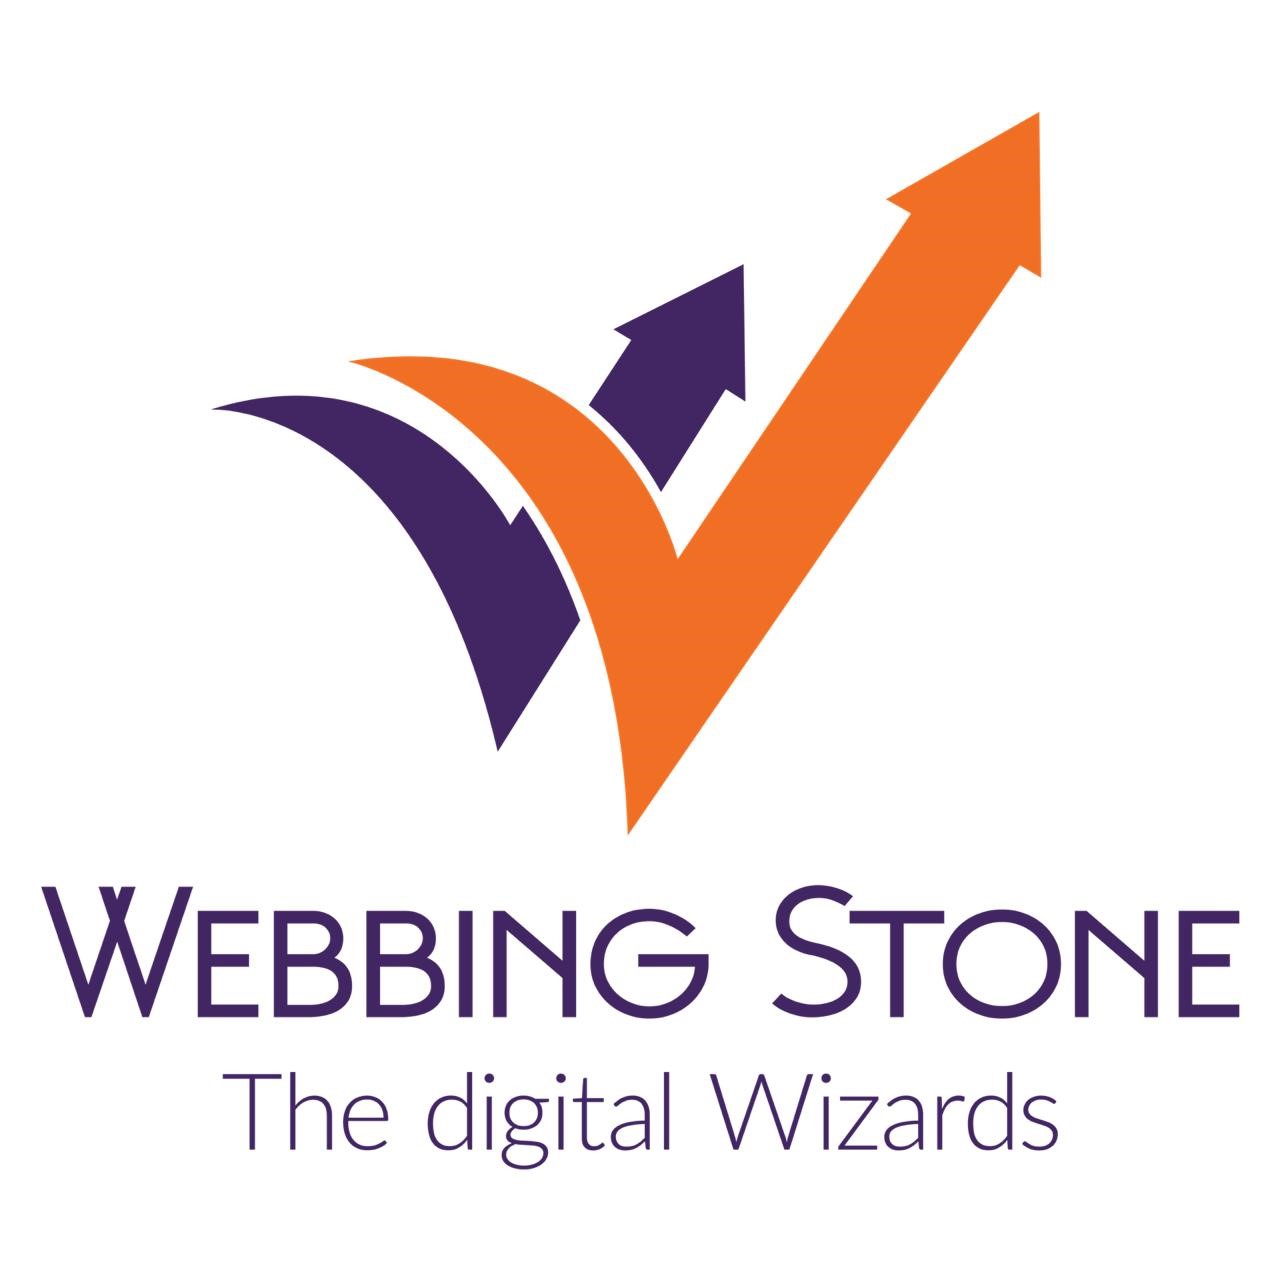 Web bing stone